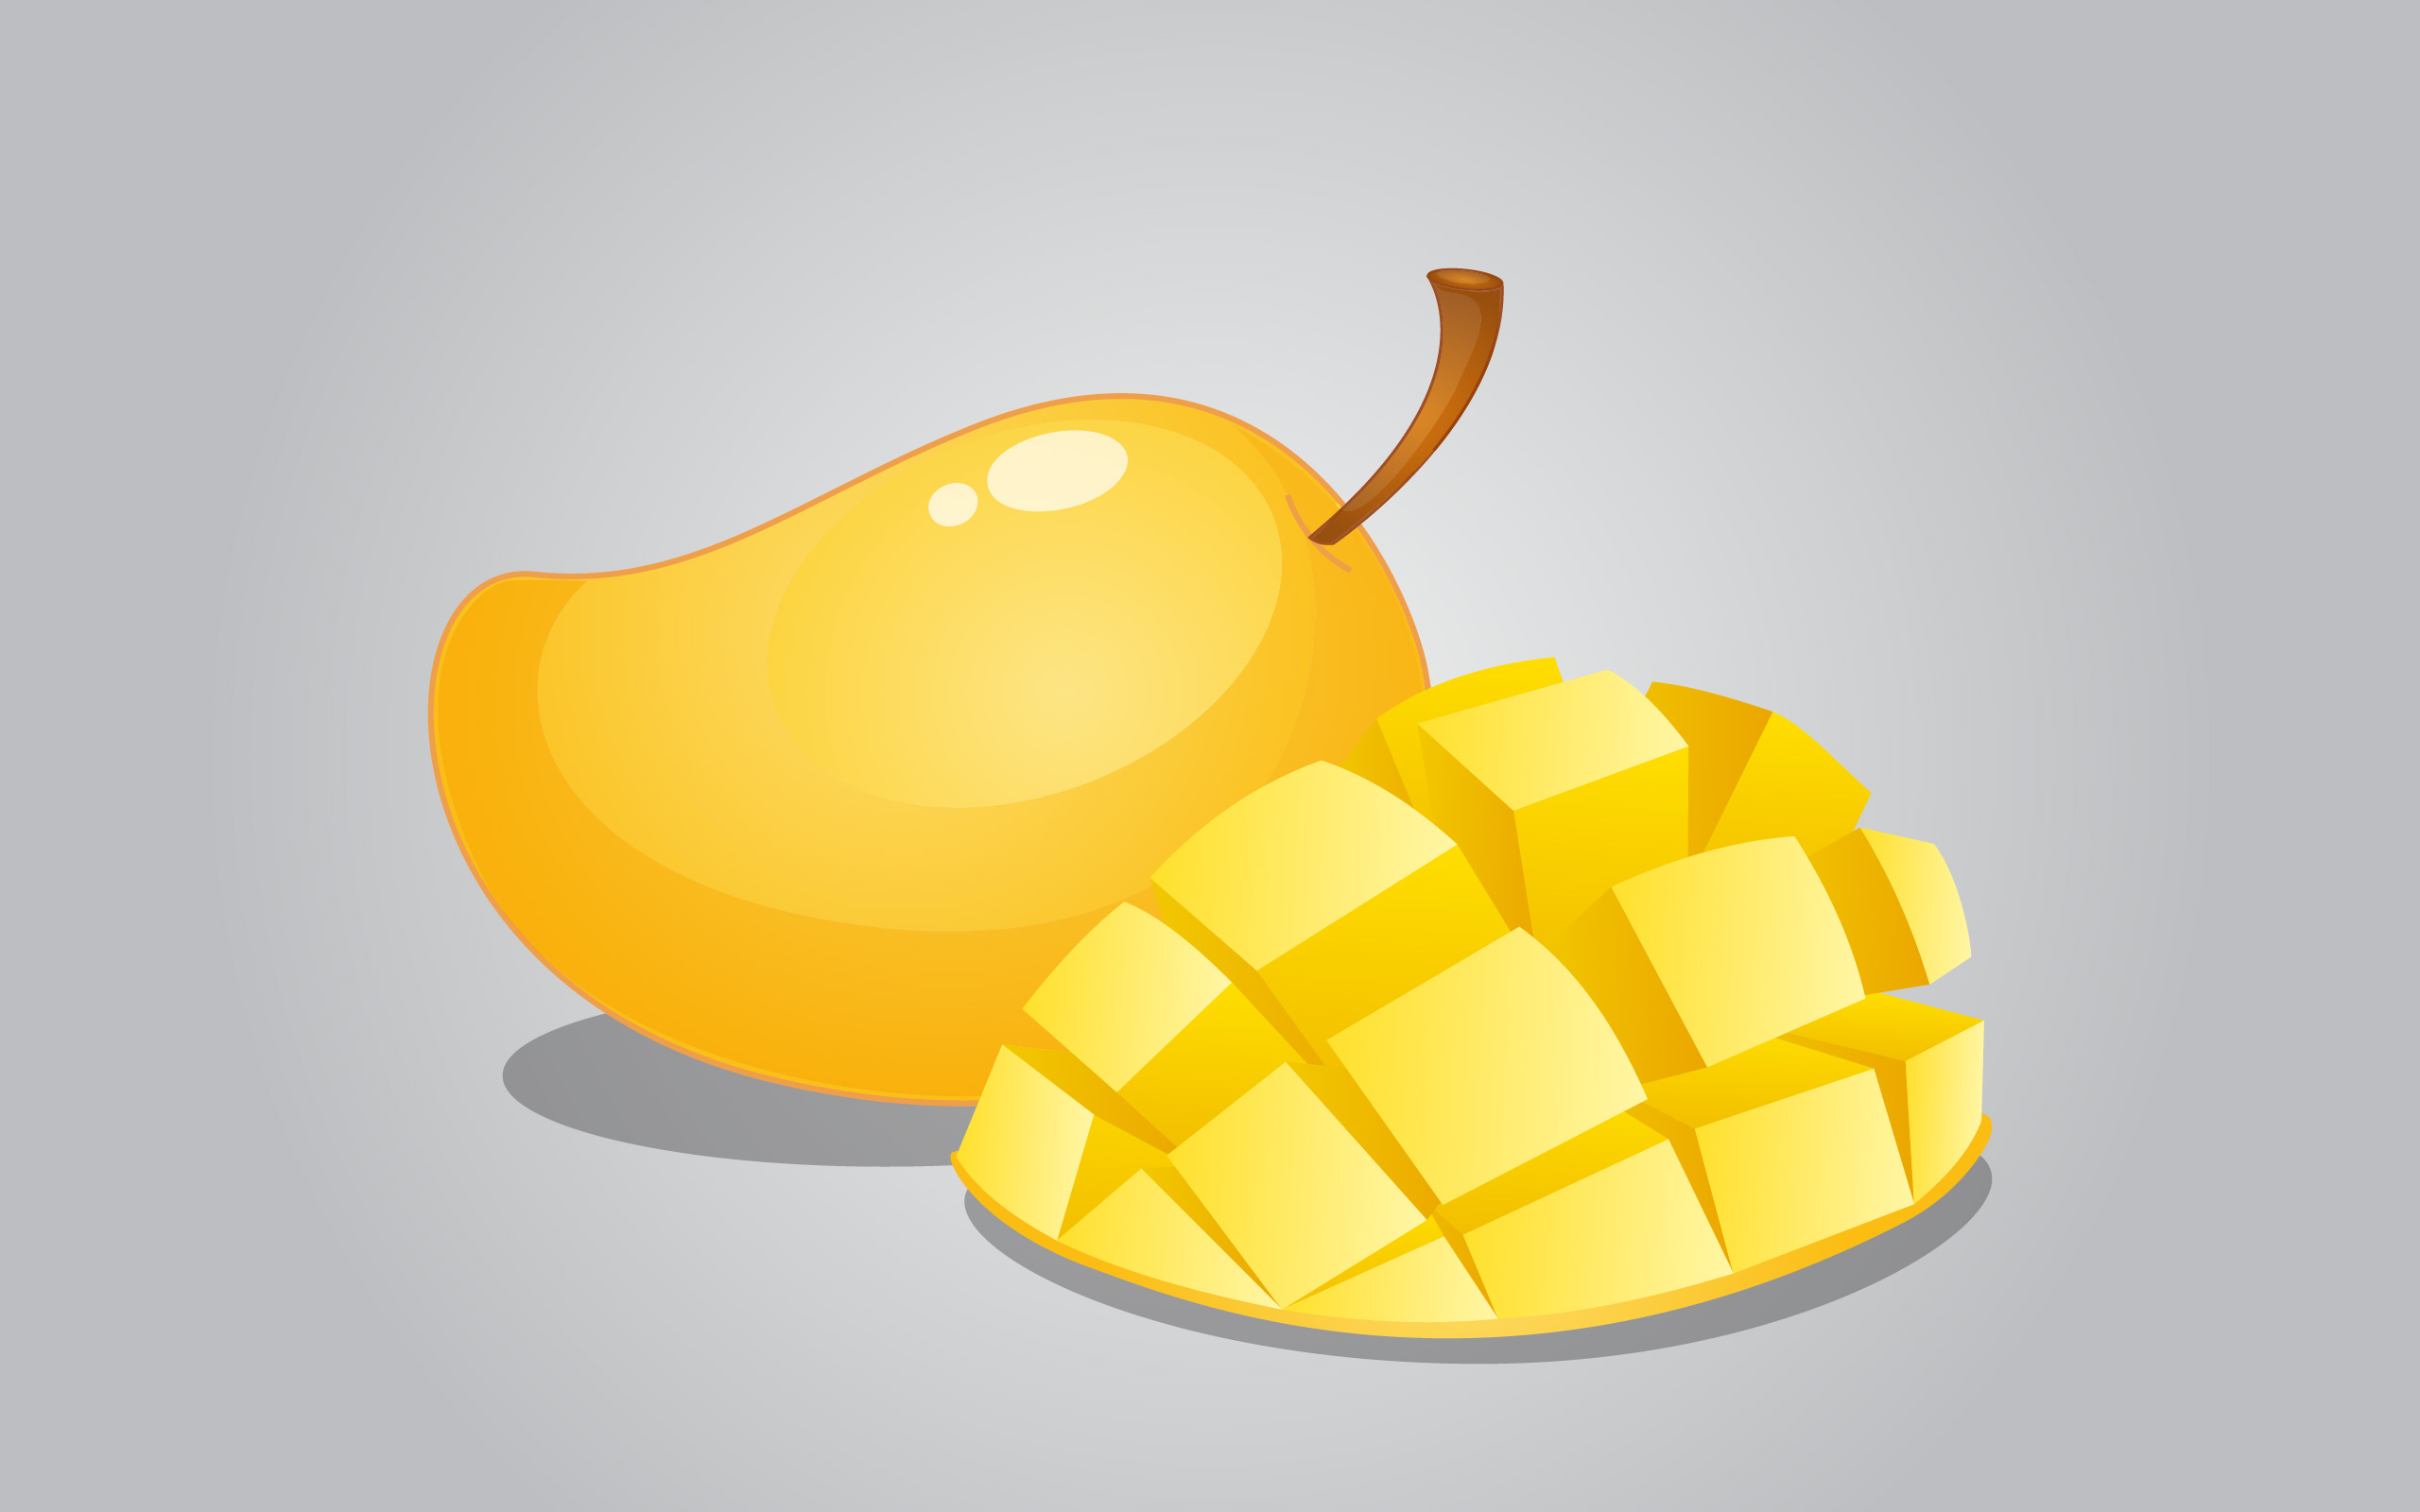 Pot oamenii cu acid din stomac să mănânce mango?